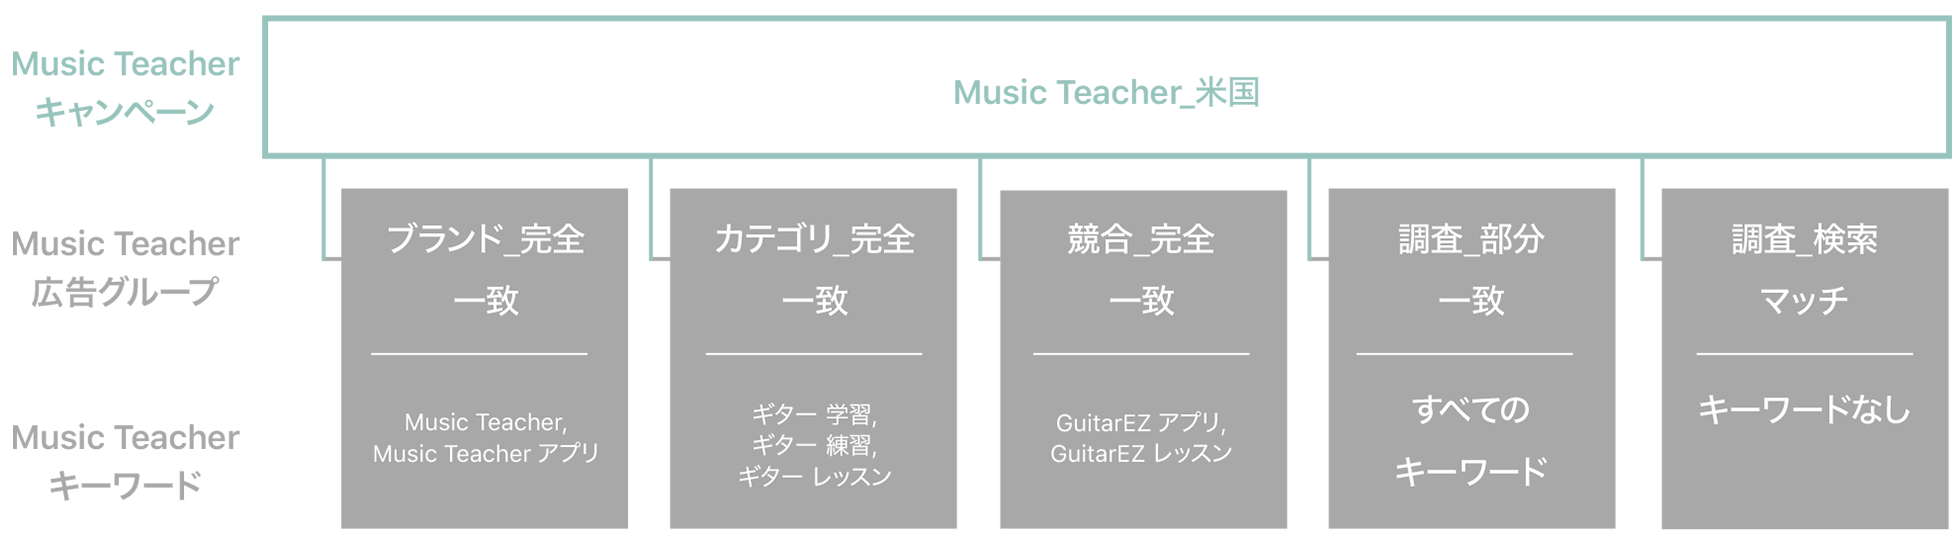 「Music Teacher_US」と名付けられたサンプルキャンペーンの図。1行目はMusic Teacherキャンペーン、2行目はMusic Teacher広告グループ、3行目はMusic Teacherキーワードを示している。「The Music Teacher_US」キャンペーンが紐付けられている広告グループとキーワード：ブランド_完全一致（キーワードは「Music Teacher」と「Music Teacher App」）、カテゴリ_完全一致（キーワードは「learn guitar」、「guitar teacher」、「guitar lessons」）、競合_完全一致（キーワードは「GuitarEZ App」と「GuitarEZ lessons」）、調査_部分一致（すべてのキーワード）、調査_検索マッチ（キーワードなし）。